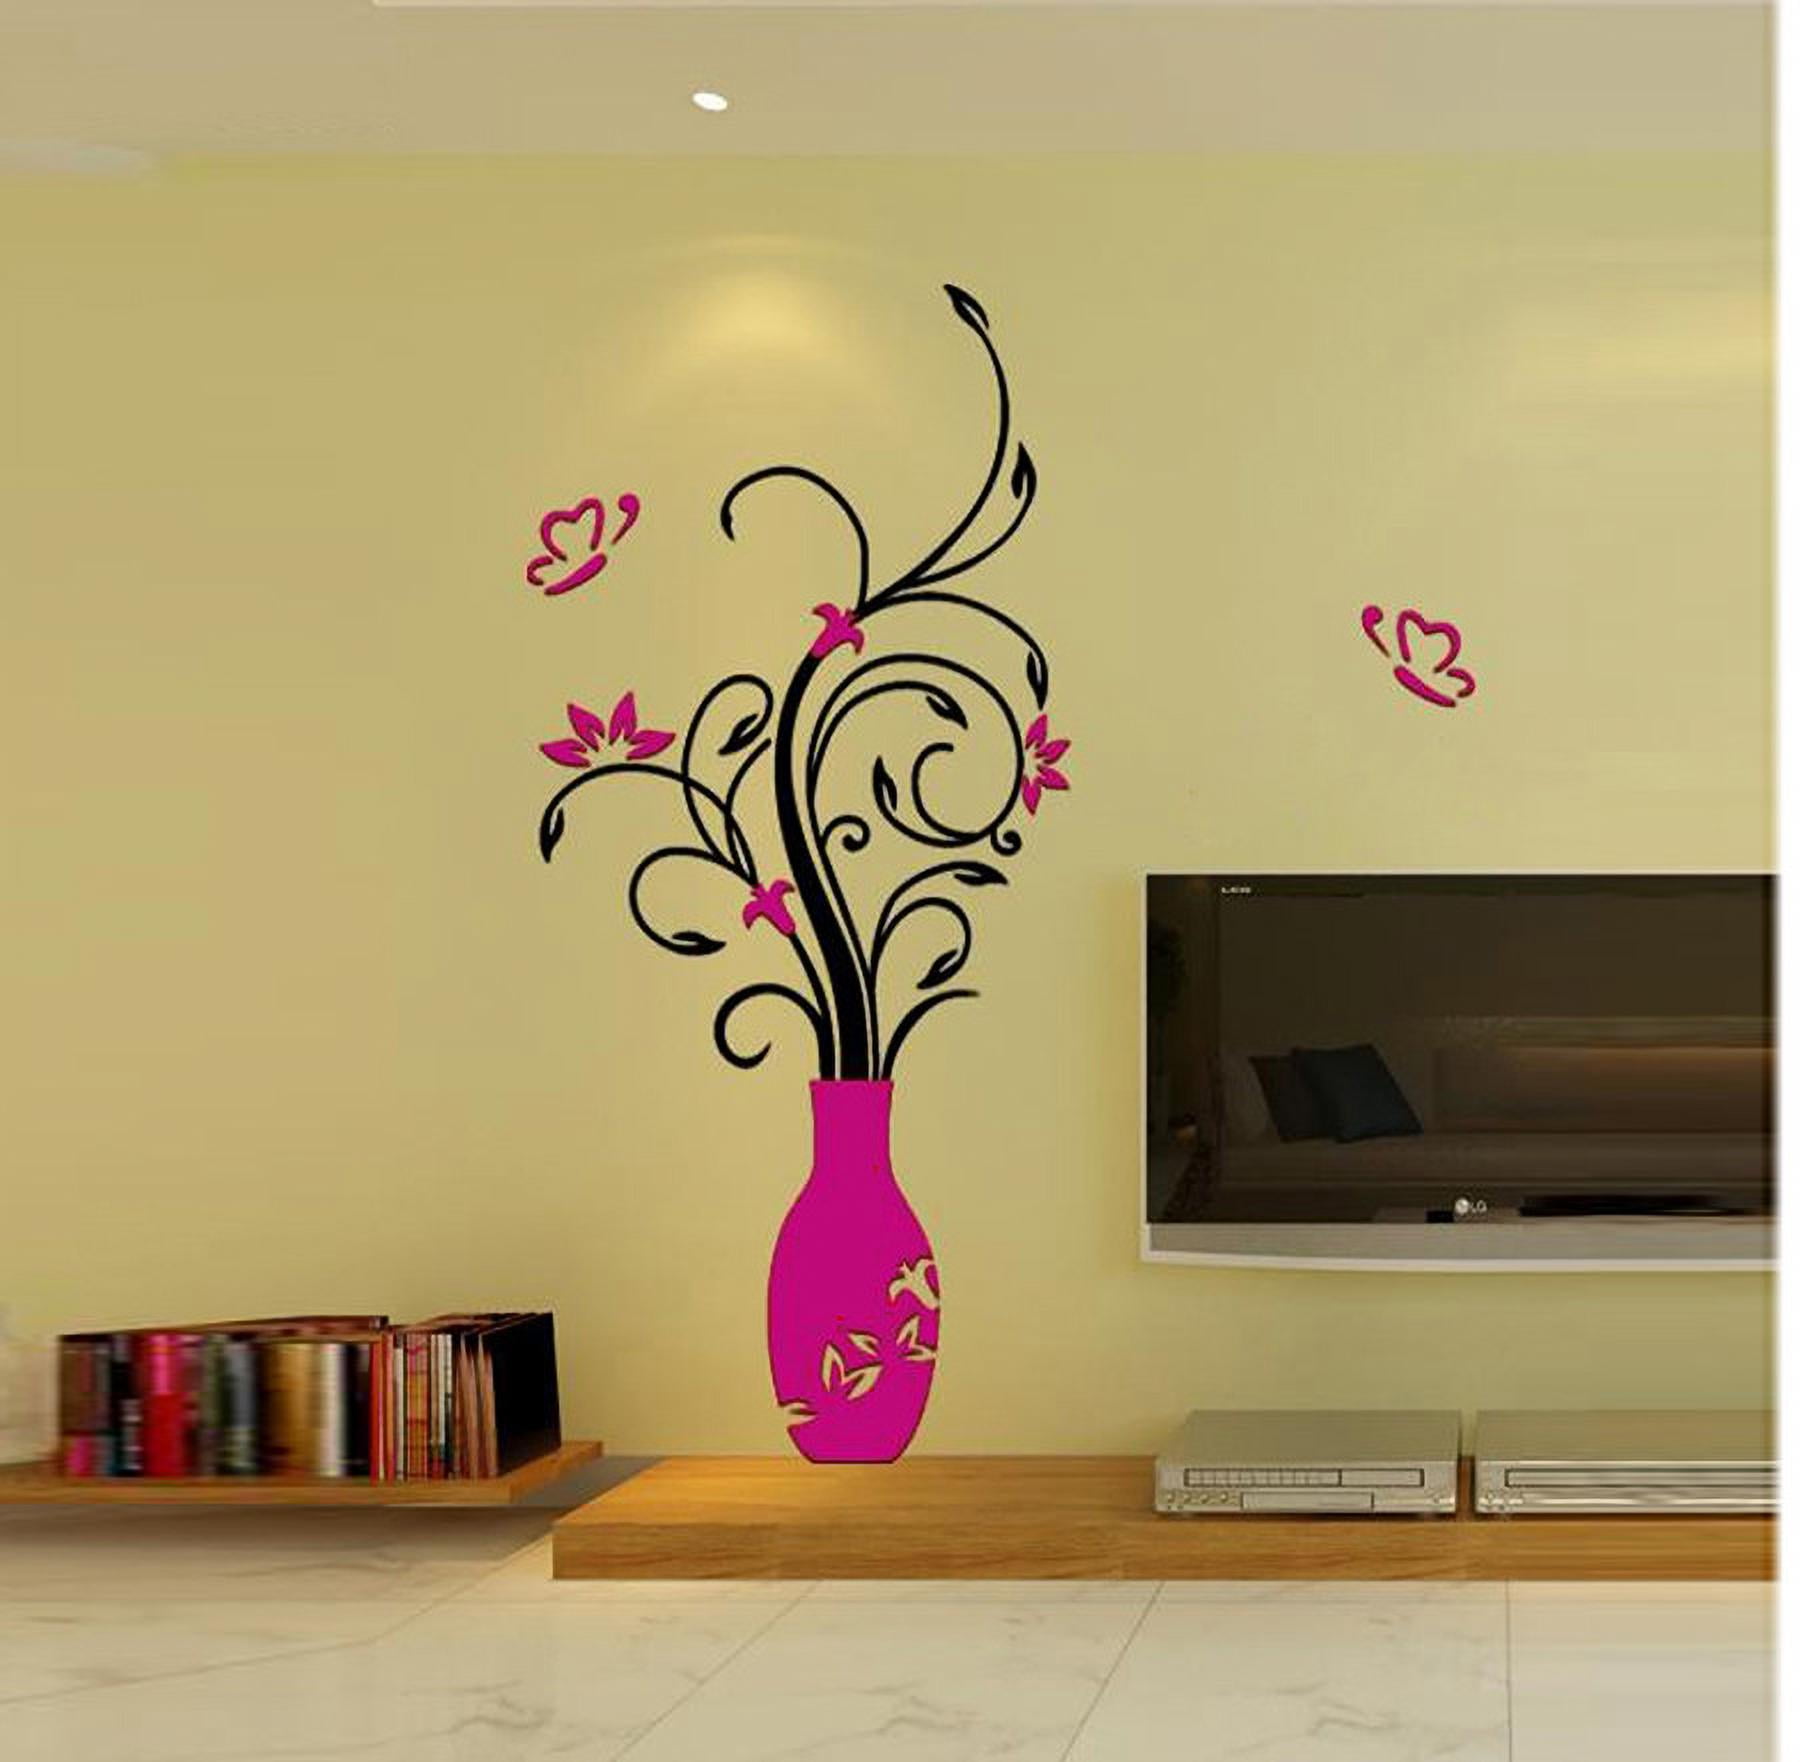 Details about   3D Beautiful Flower Pot Wall Sticker Wall Sticker Vinyl Decal Home Decor